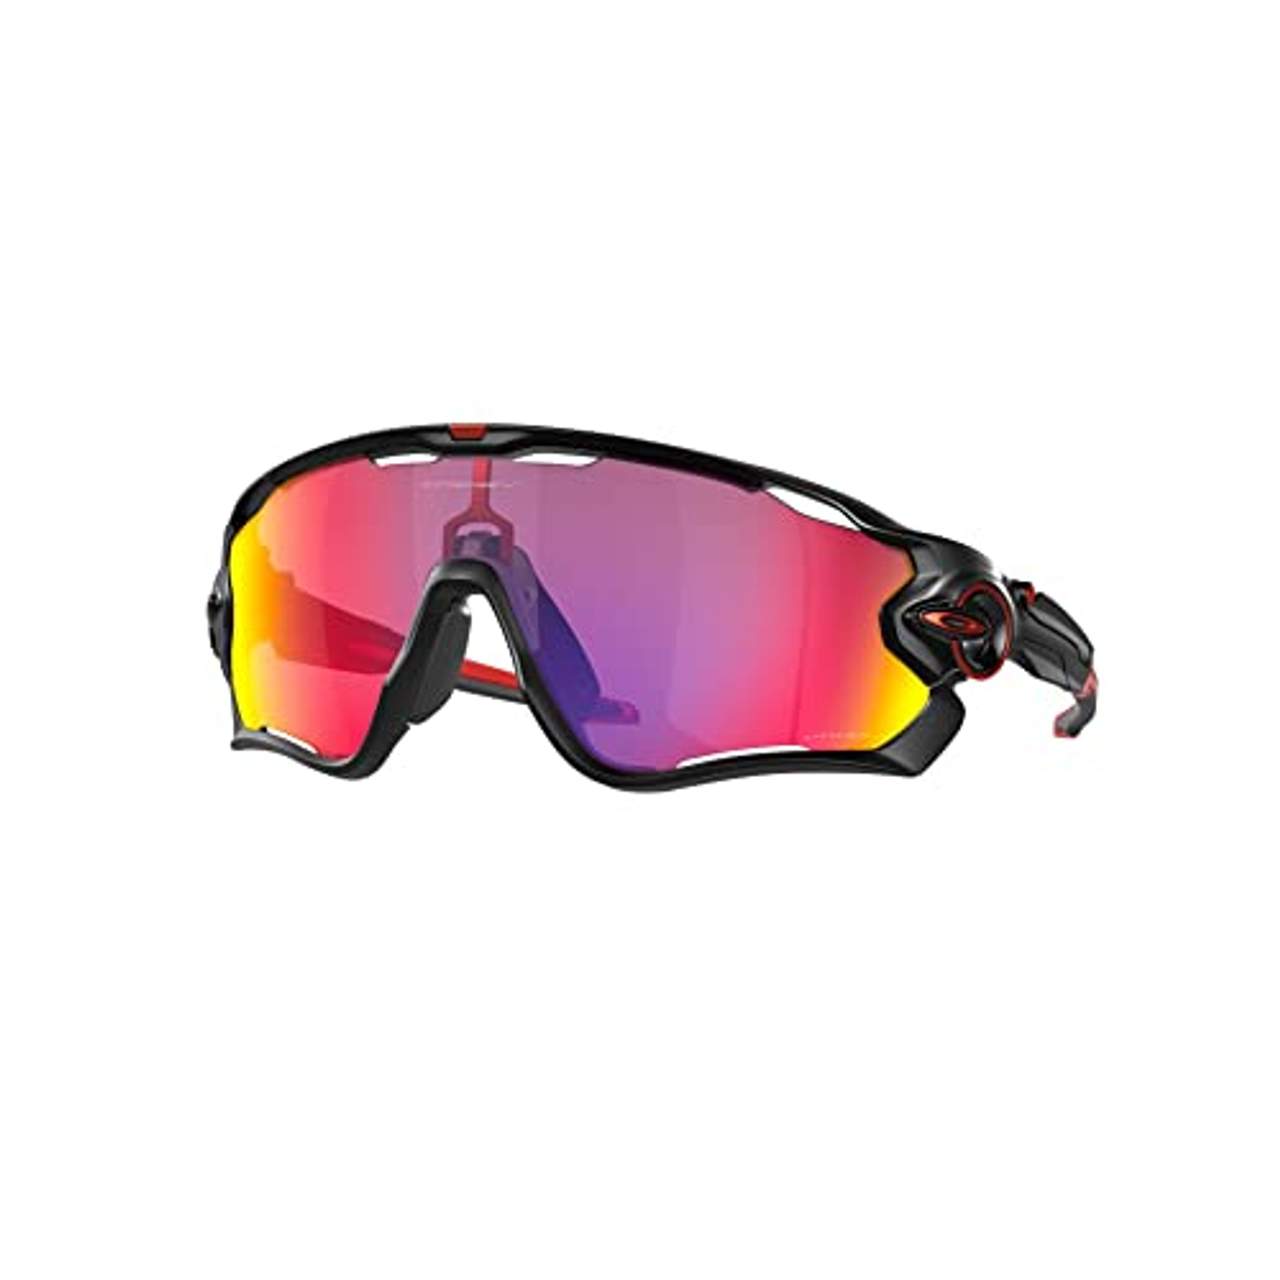 Gletscherbrille Ski Sportbrille Polsterung Wind Beschlagfrei Schutzfilter SF 4 